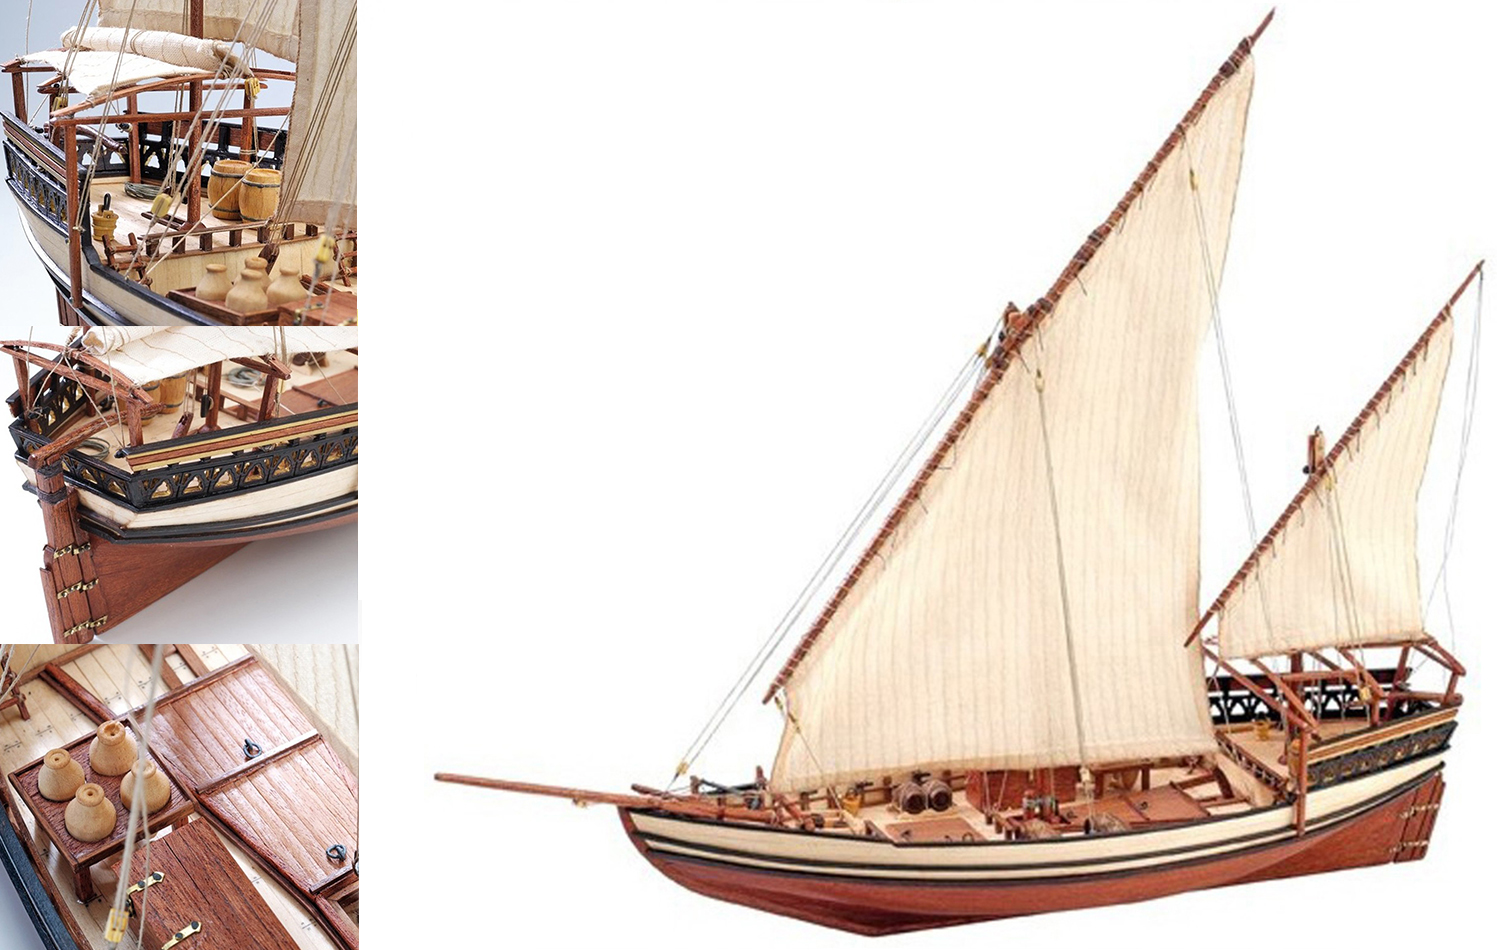 Maquetas Barcos Nivel Medio: Modelo Dhow Árabe Sultán (22165) de Artesanía Latina.